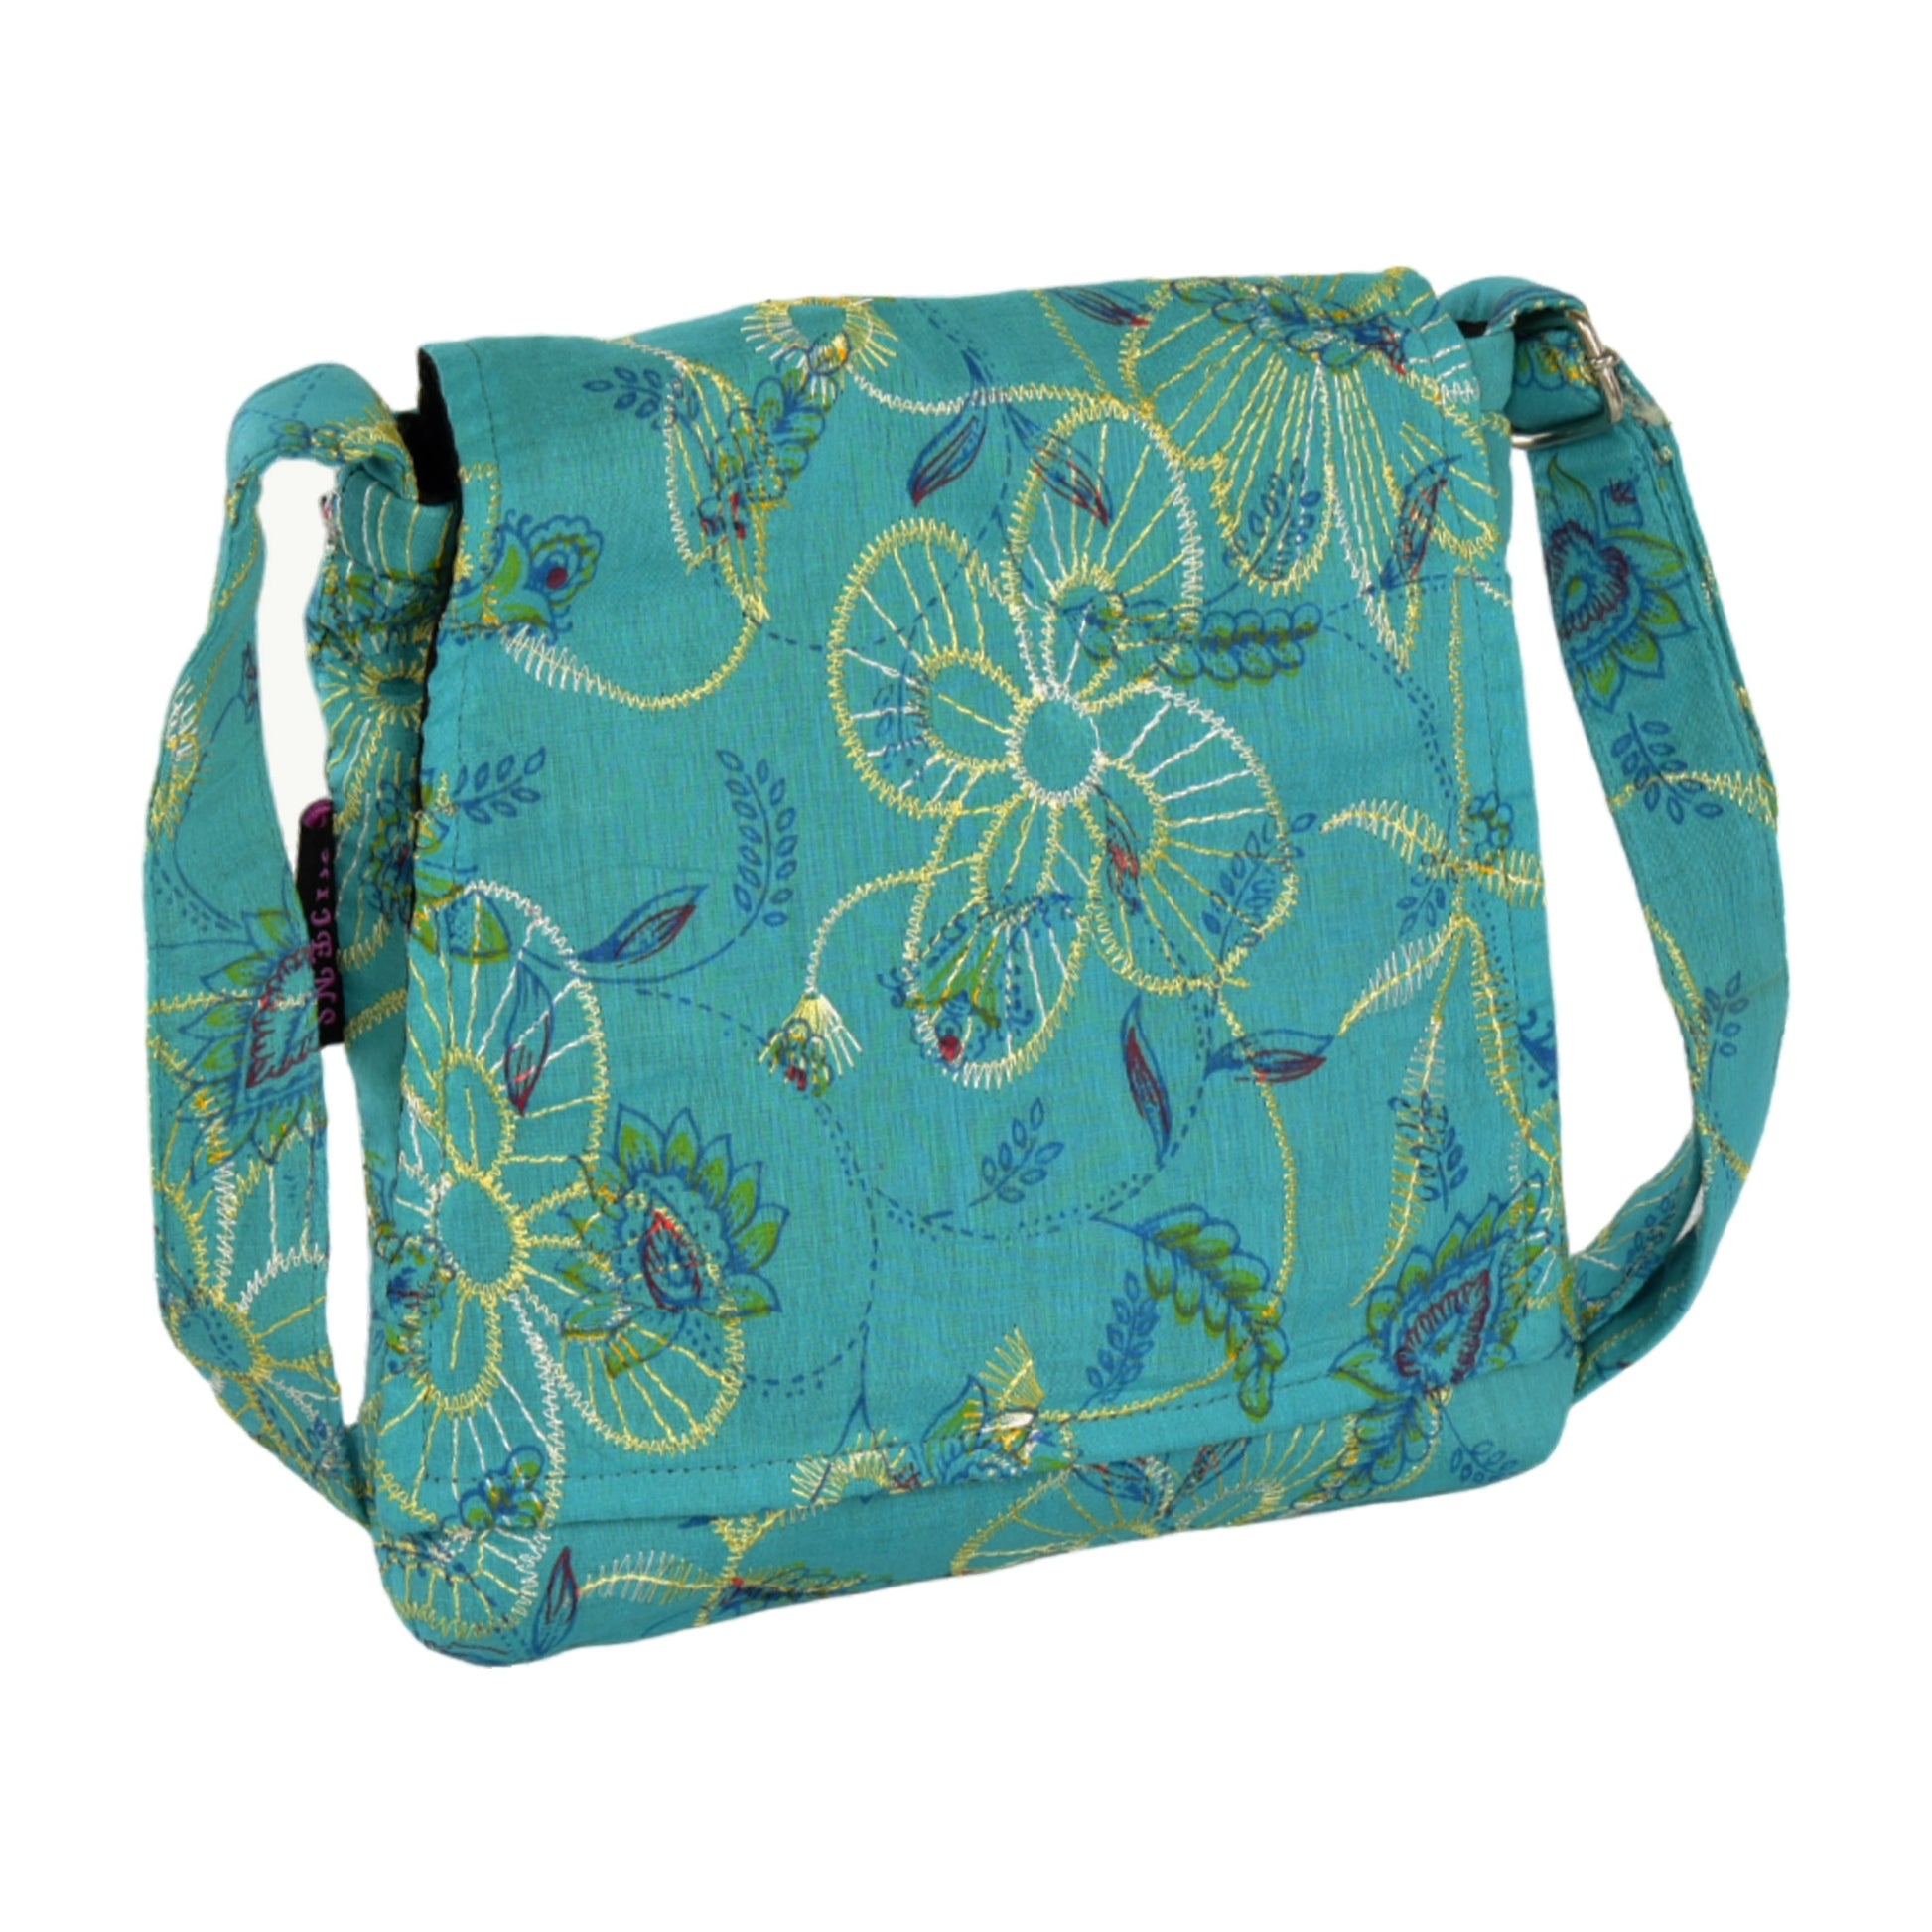 Kleine Tasche, Umhängetasche aus Baumwolle, Türkis mit Blumenstickerei verziert. Ein Hauptfach mit Einsteckfach und jeweils ein Reißverschlussfach vorne und hinten.